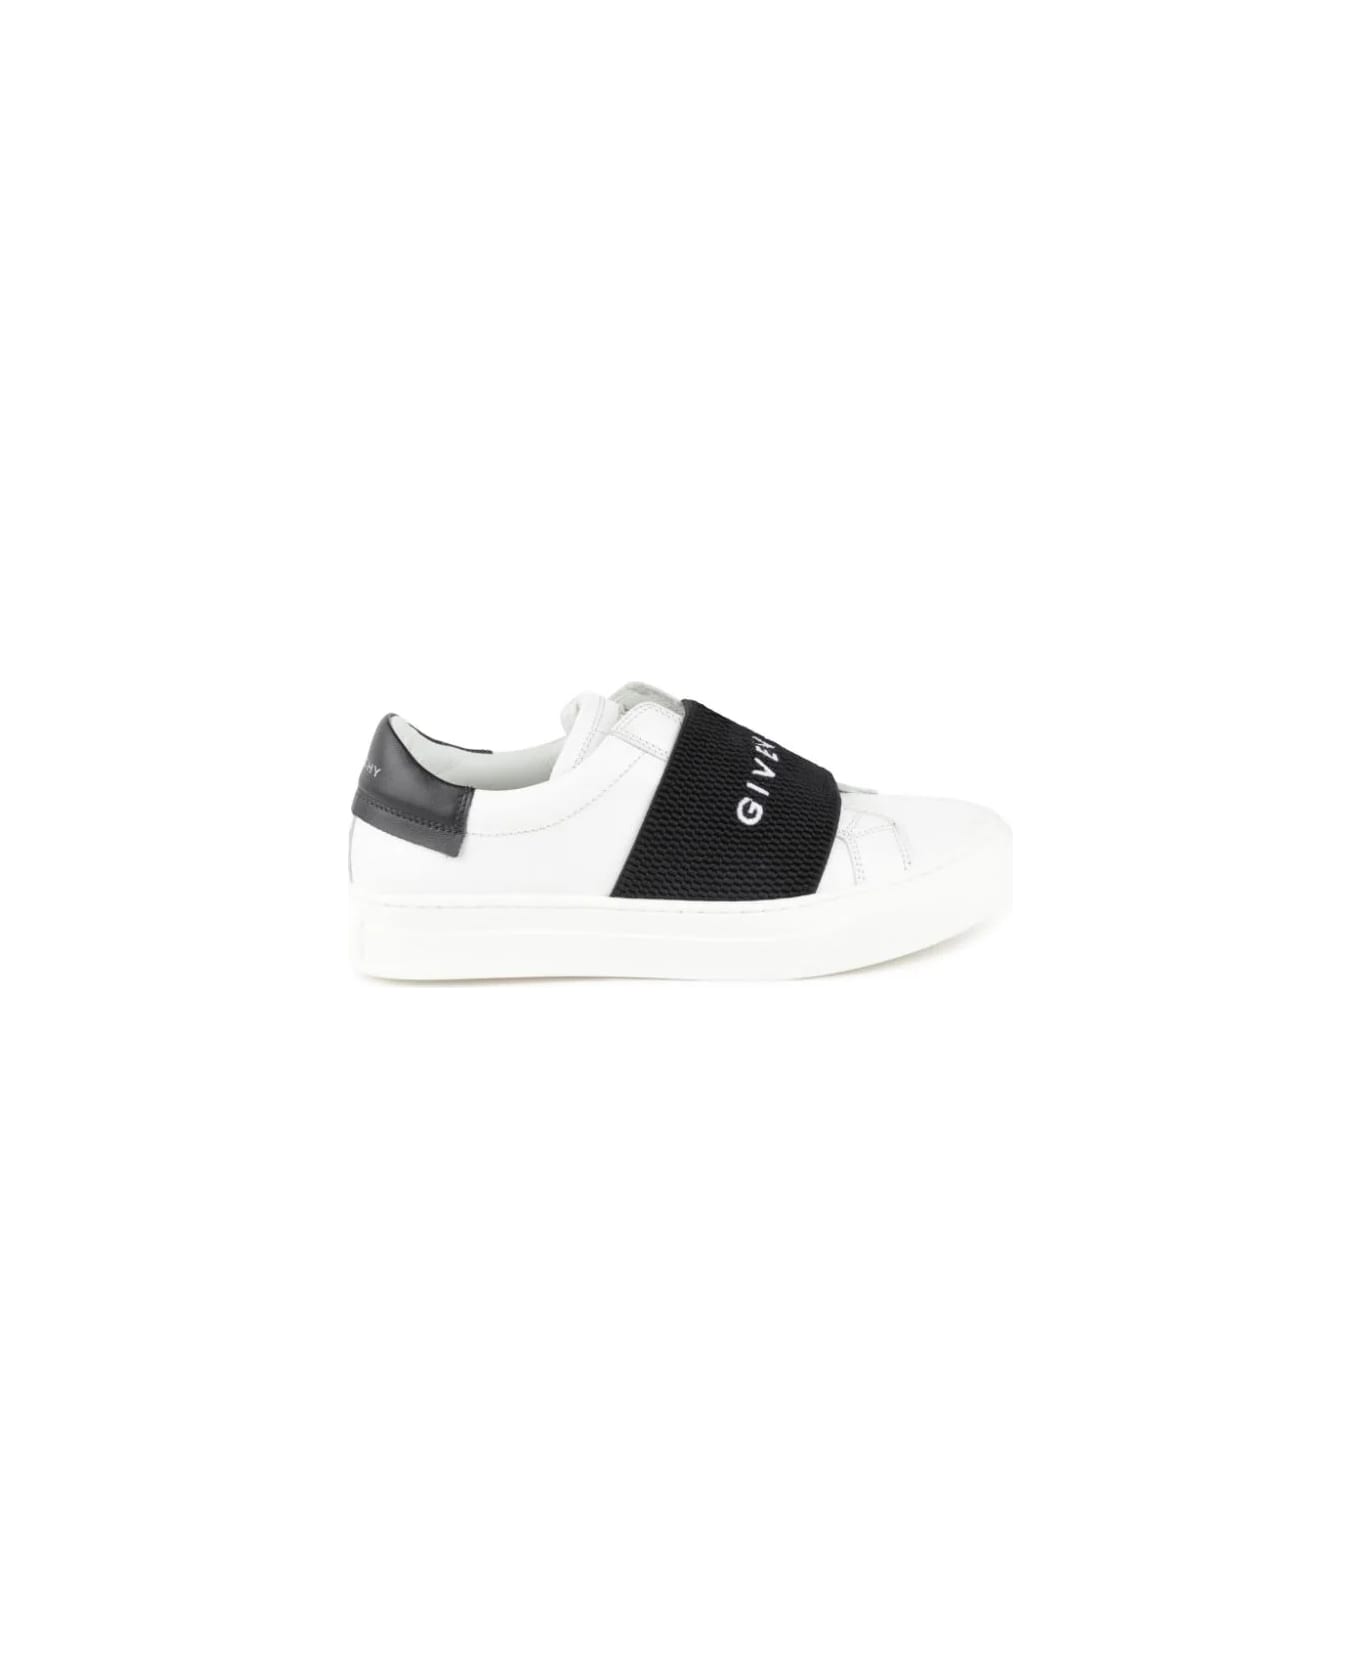 Givenchy White Urban Street Sneakers With Black Logo Band - White シューズ